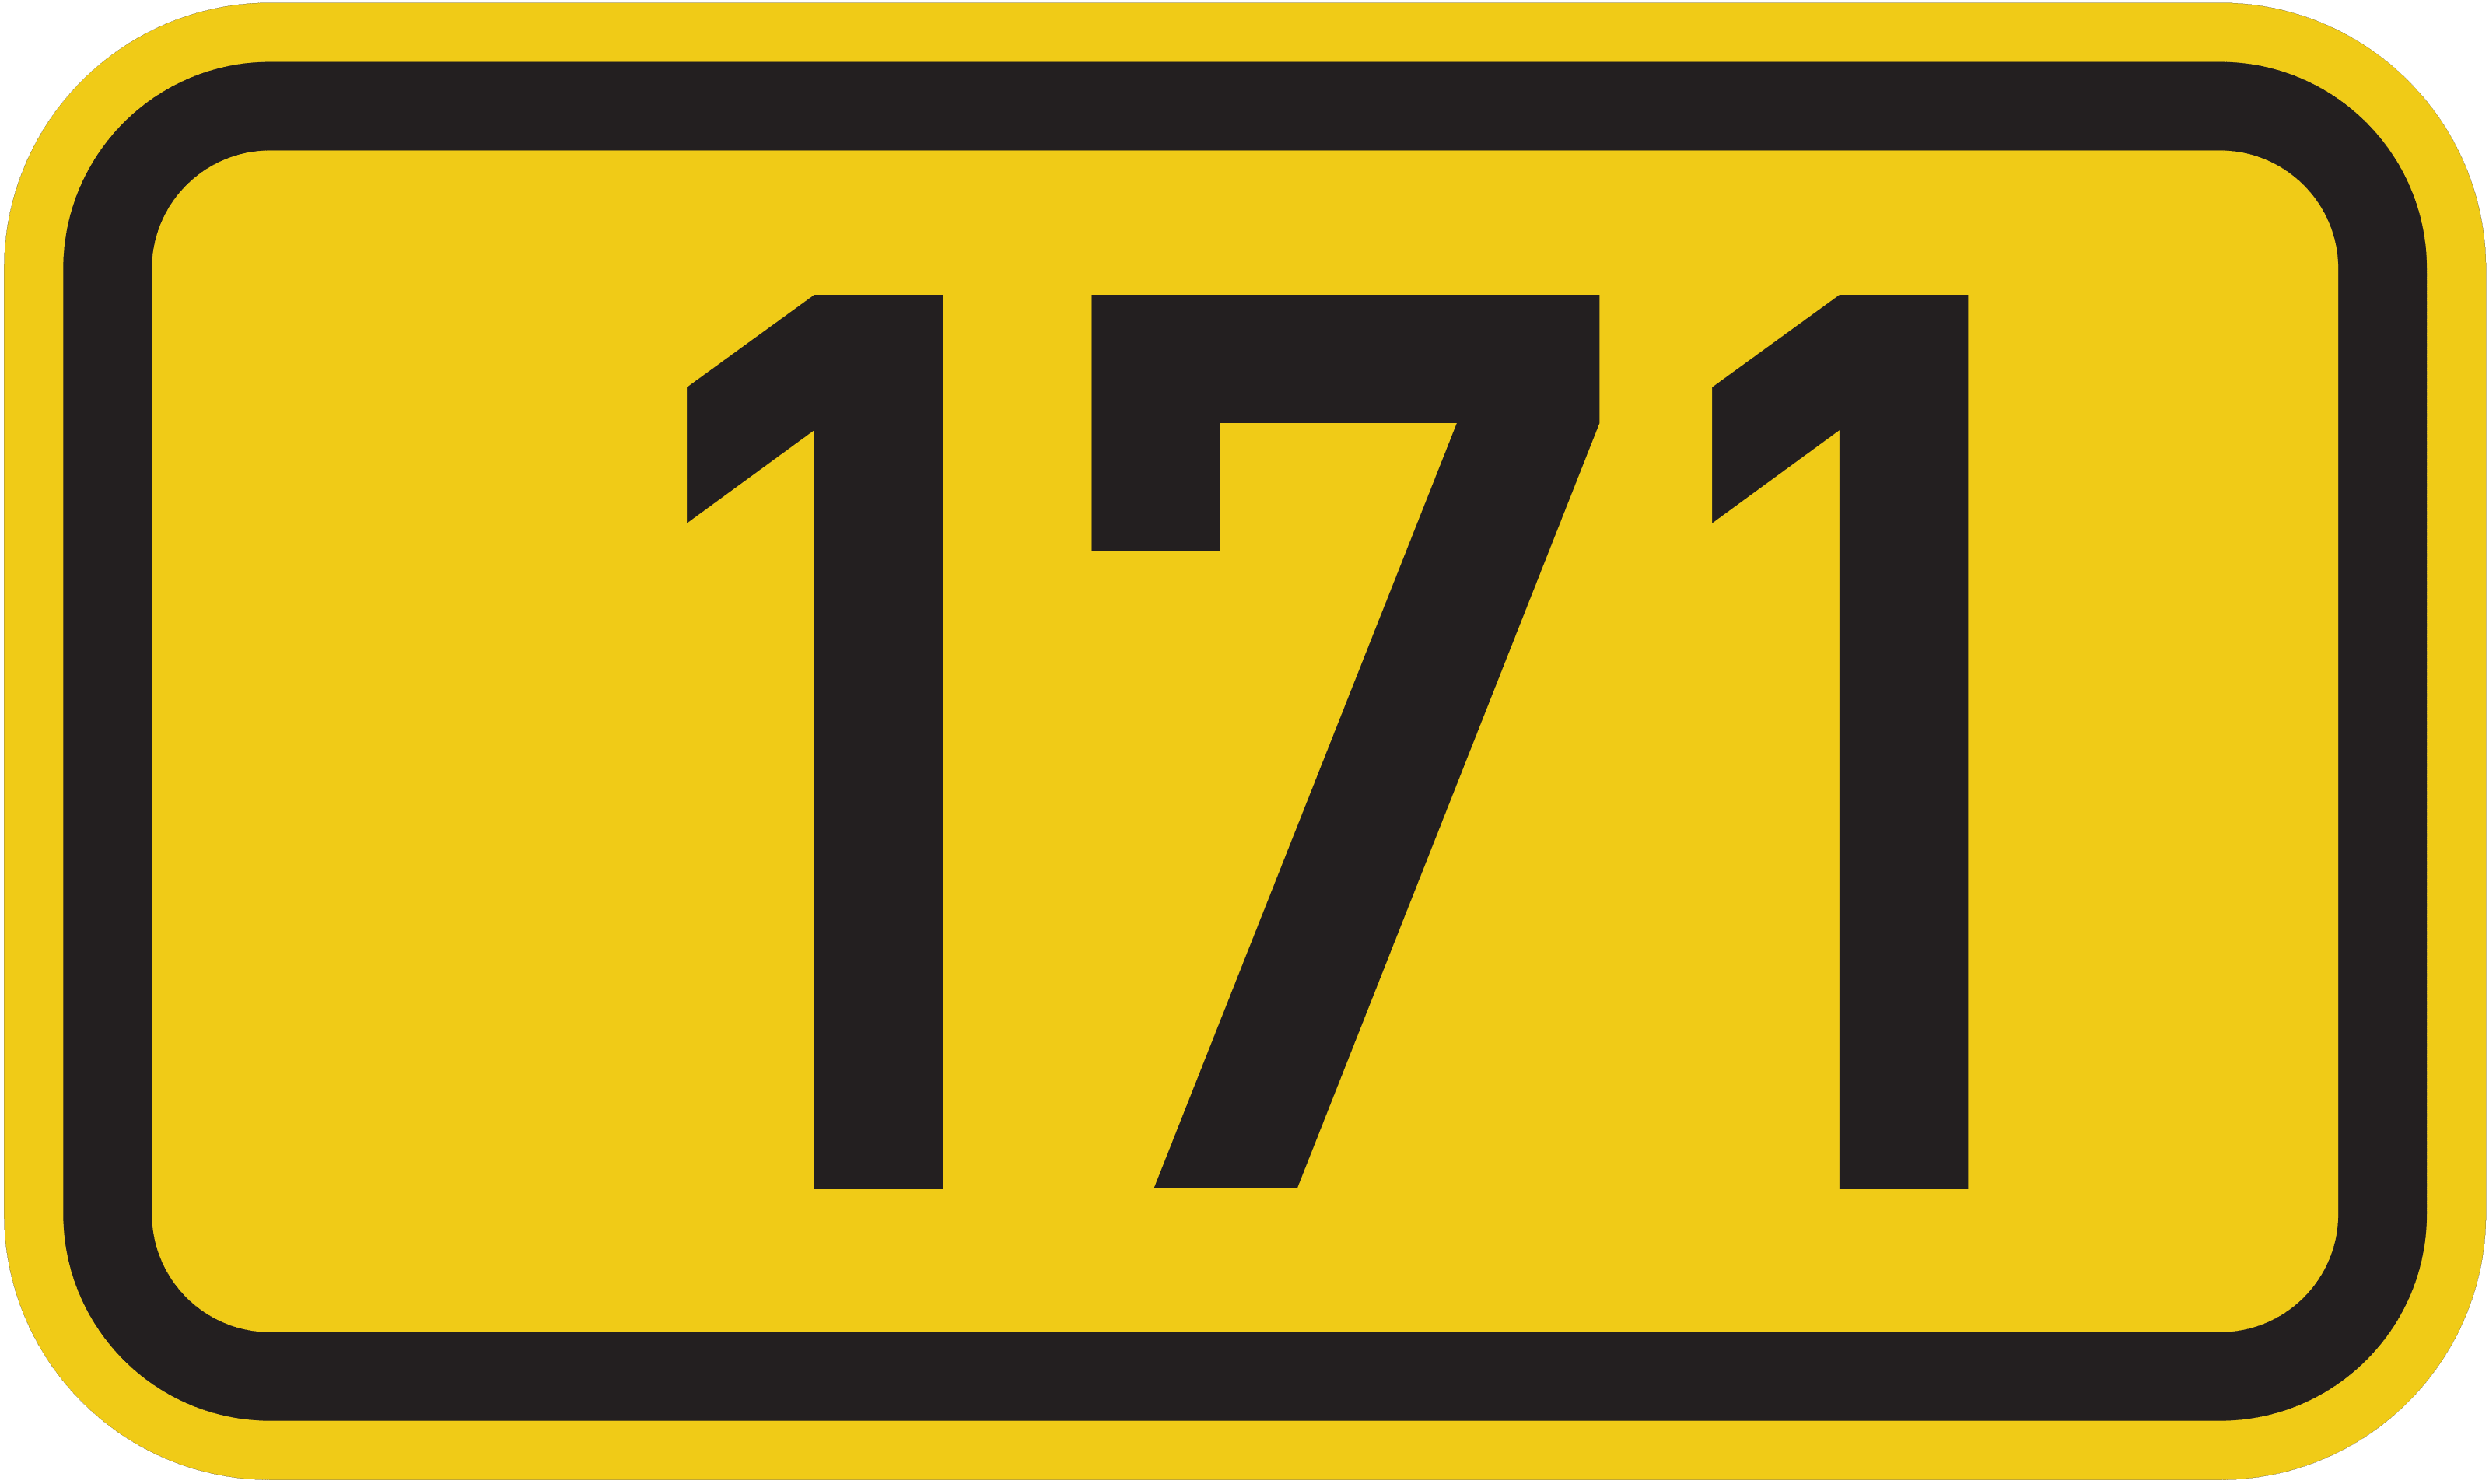 Bundesstraße B 171